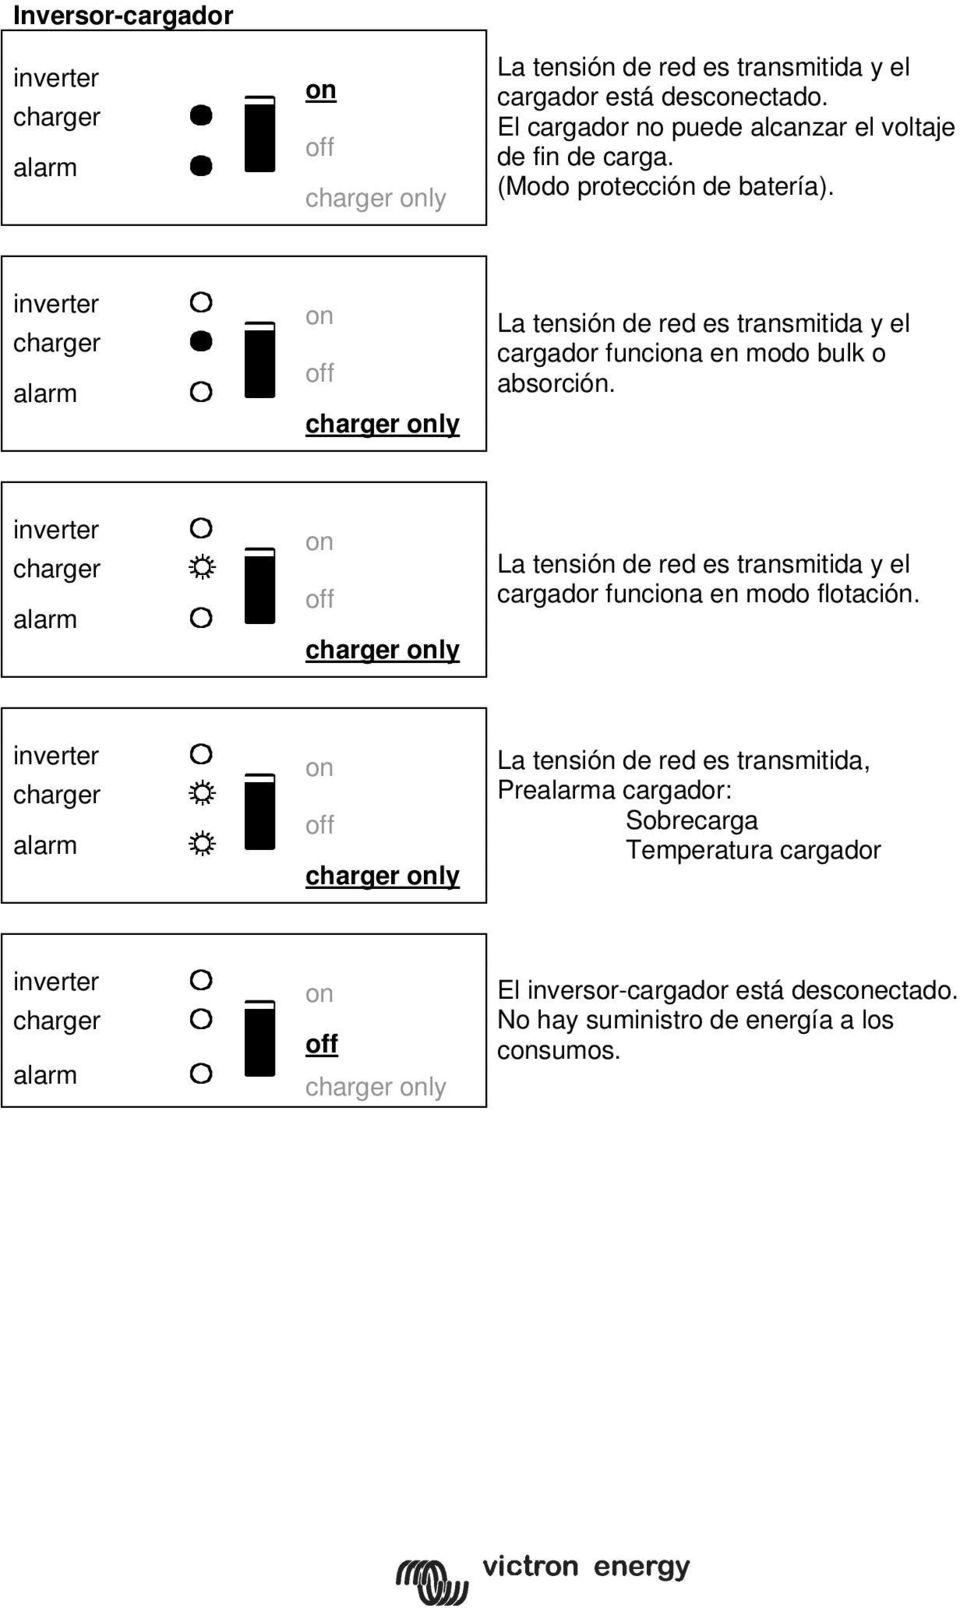 inverter charger alarm charger ly La tensión de red es transmitida y el cargador funcia en modo bulk o absorción.